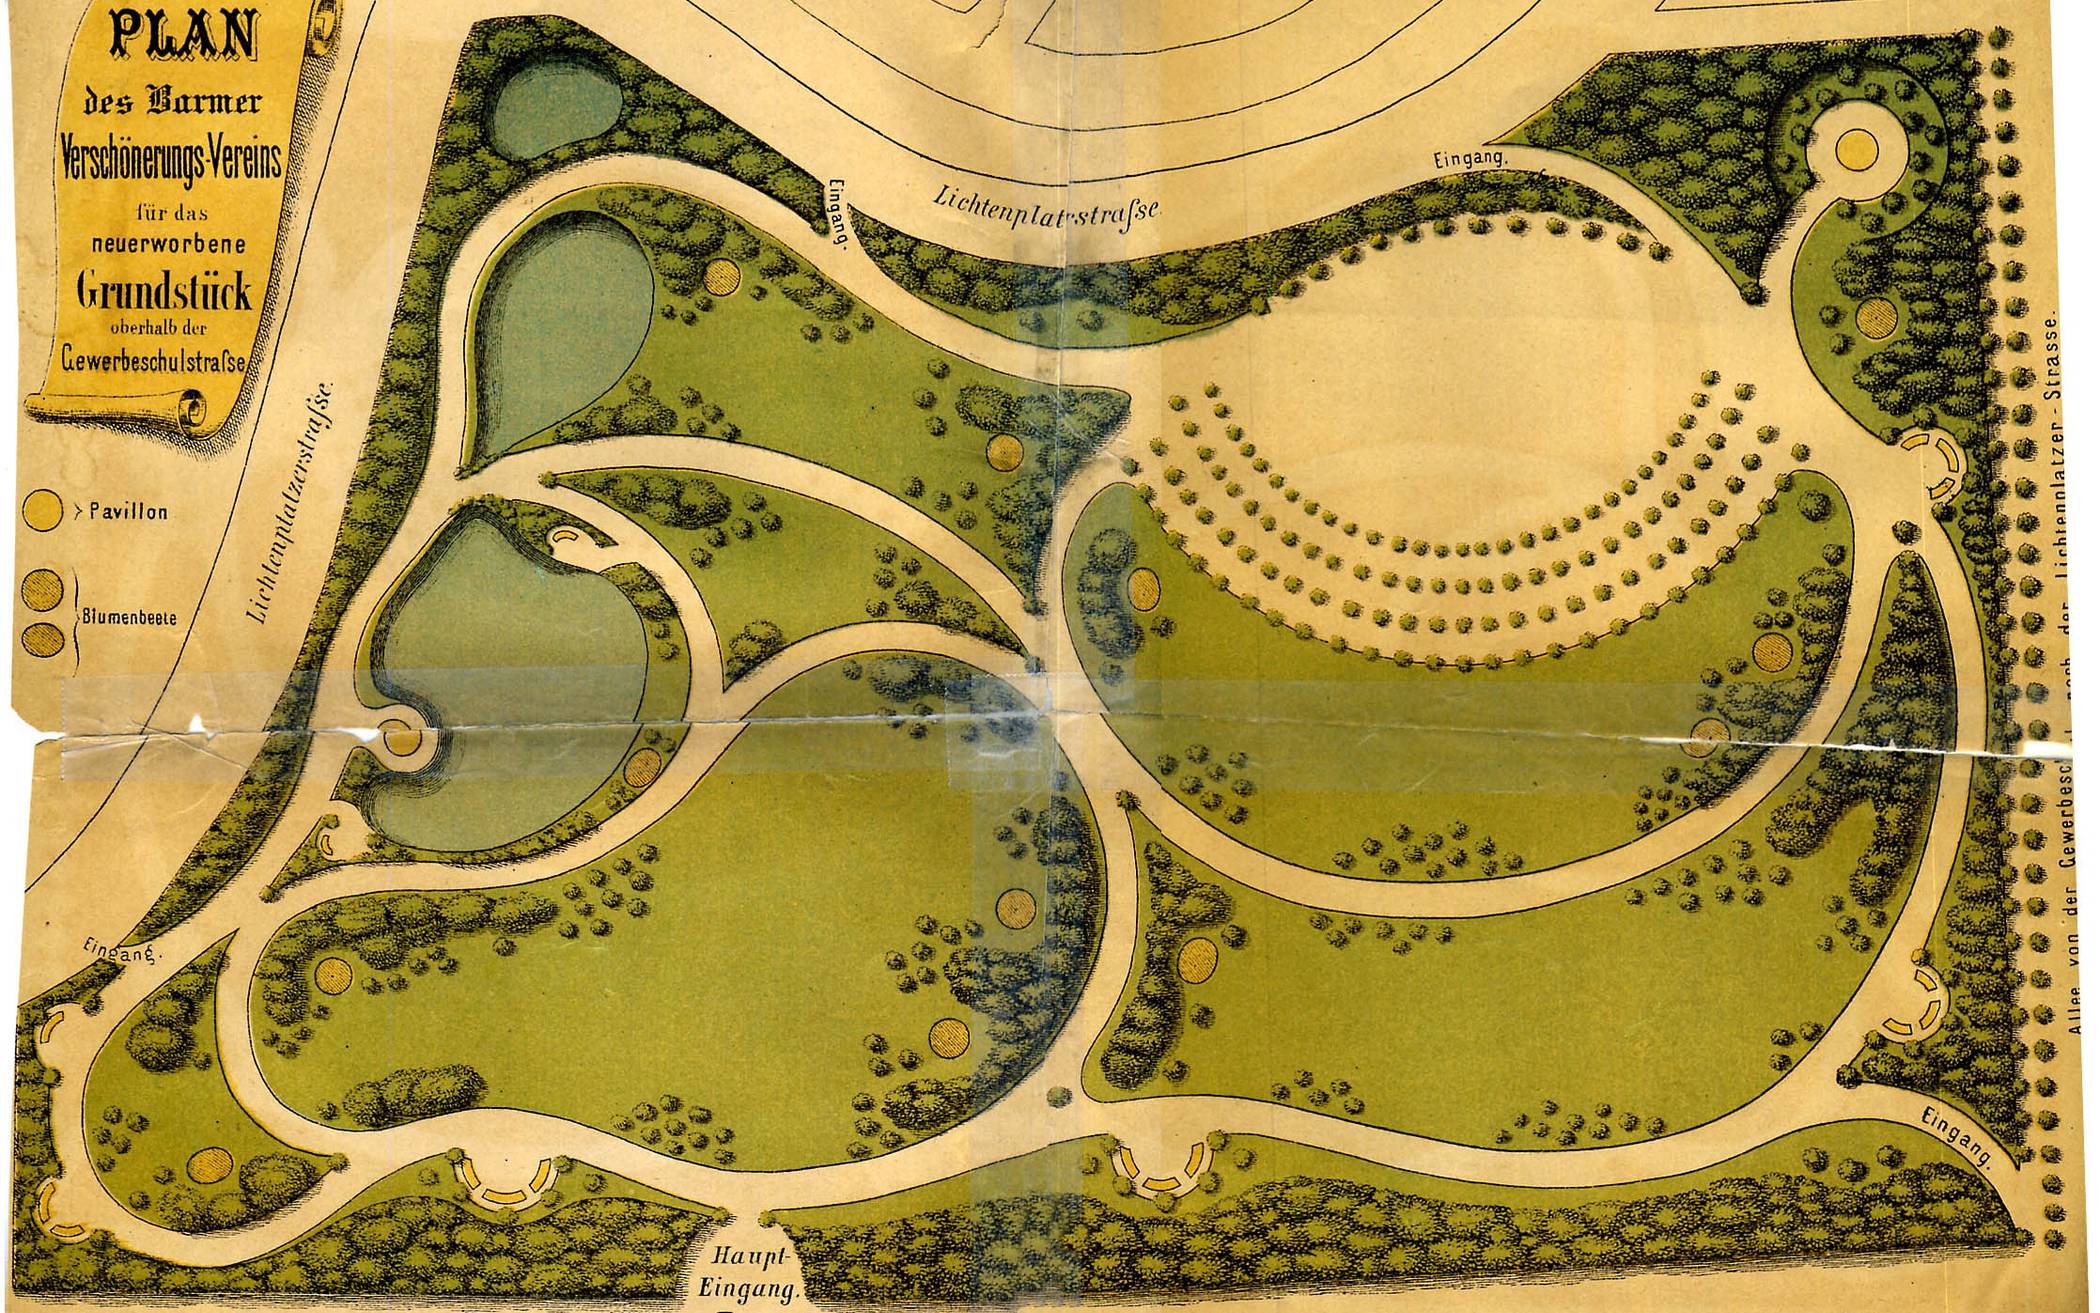  Nach diesem Plan von Joseph Clemens Weyhe sind die unteren Anlagen durch Peter Schölgen gestaltet worden. 